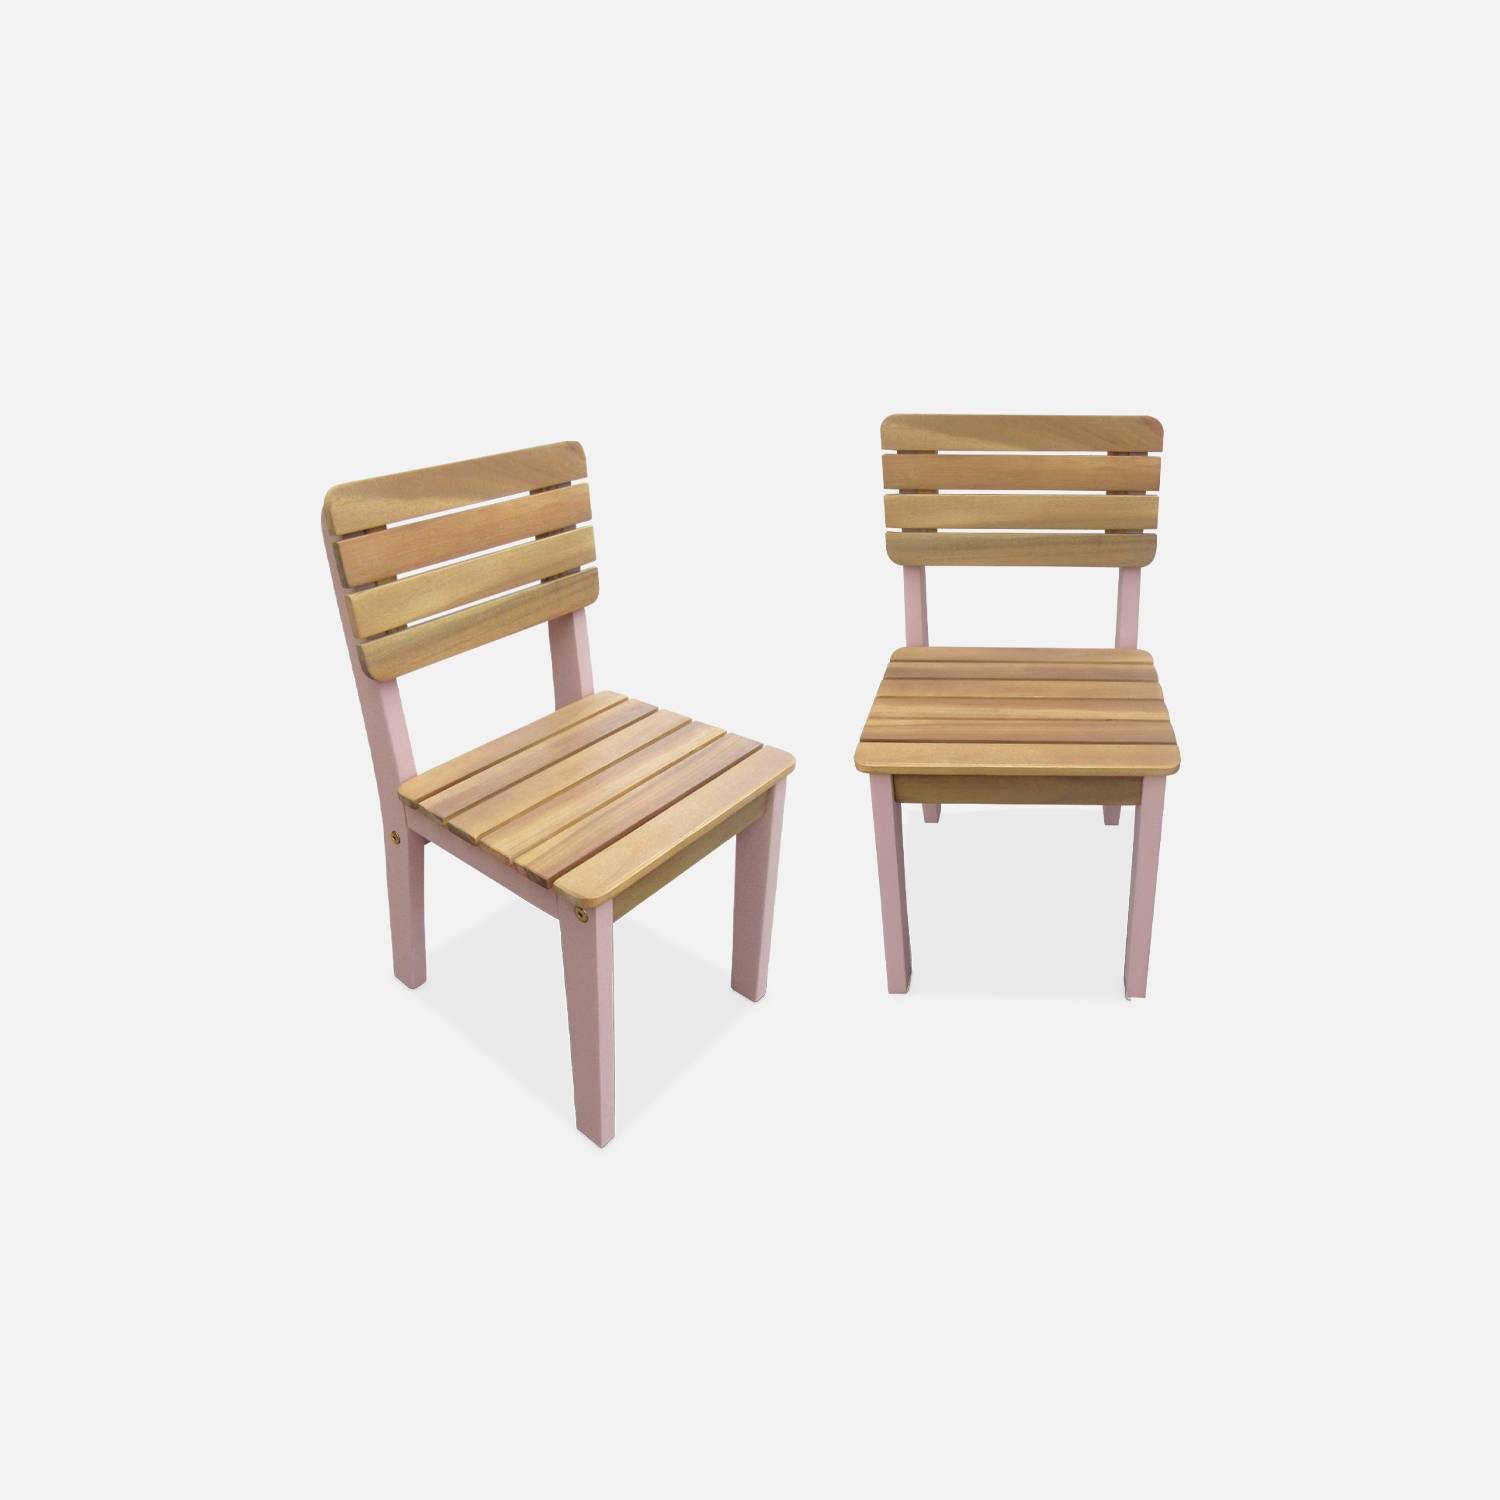  Lote de 2 sillas infantiles de madera, color rosa I sweeek